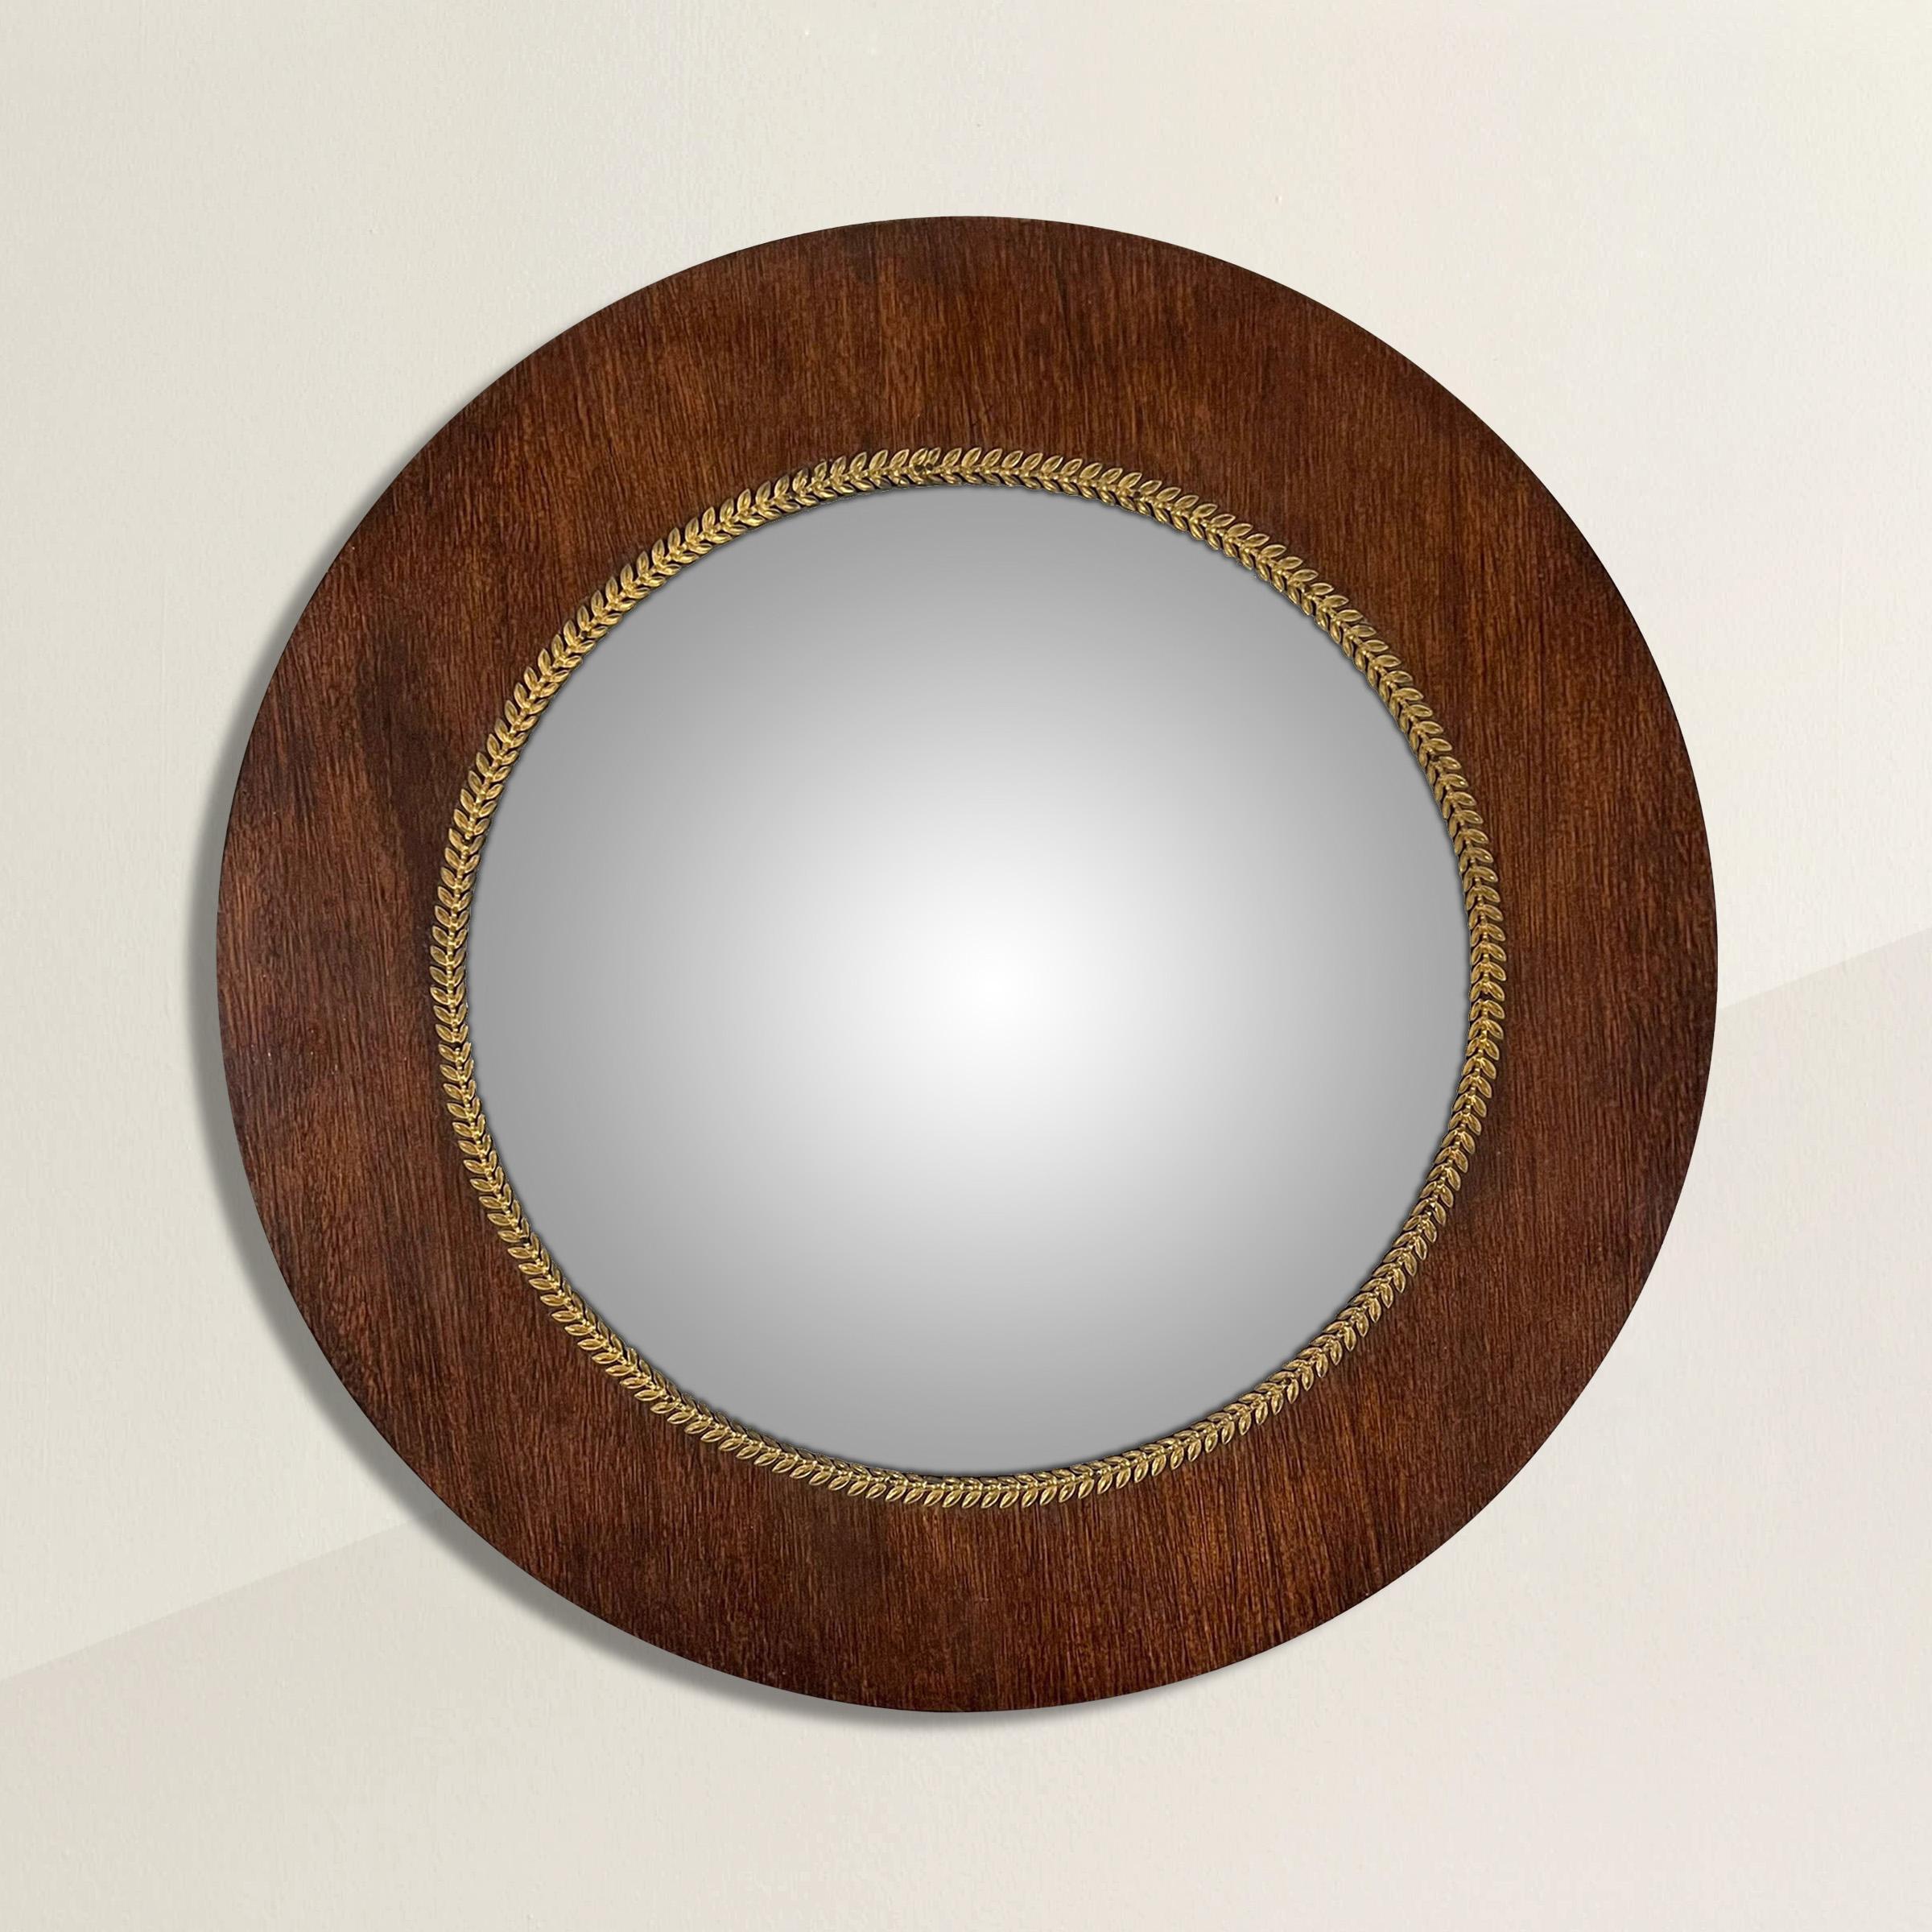 Superbe miroir convexe du début du XIXe siècle en acajou avec cadre Empire français et fine garniture de couronne de laurier en bronze doré. Contrairement à la plupart des miroirs convexes qui sont bombés, ce miroir a un dôme plus plat qui se